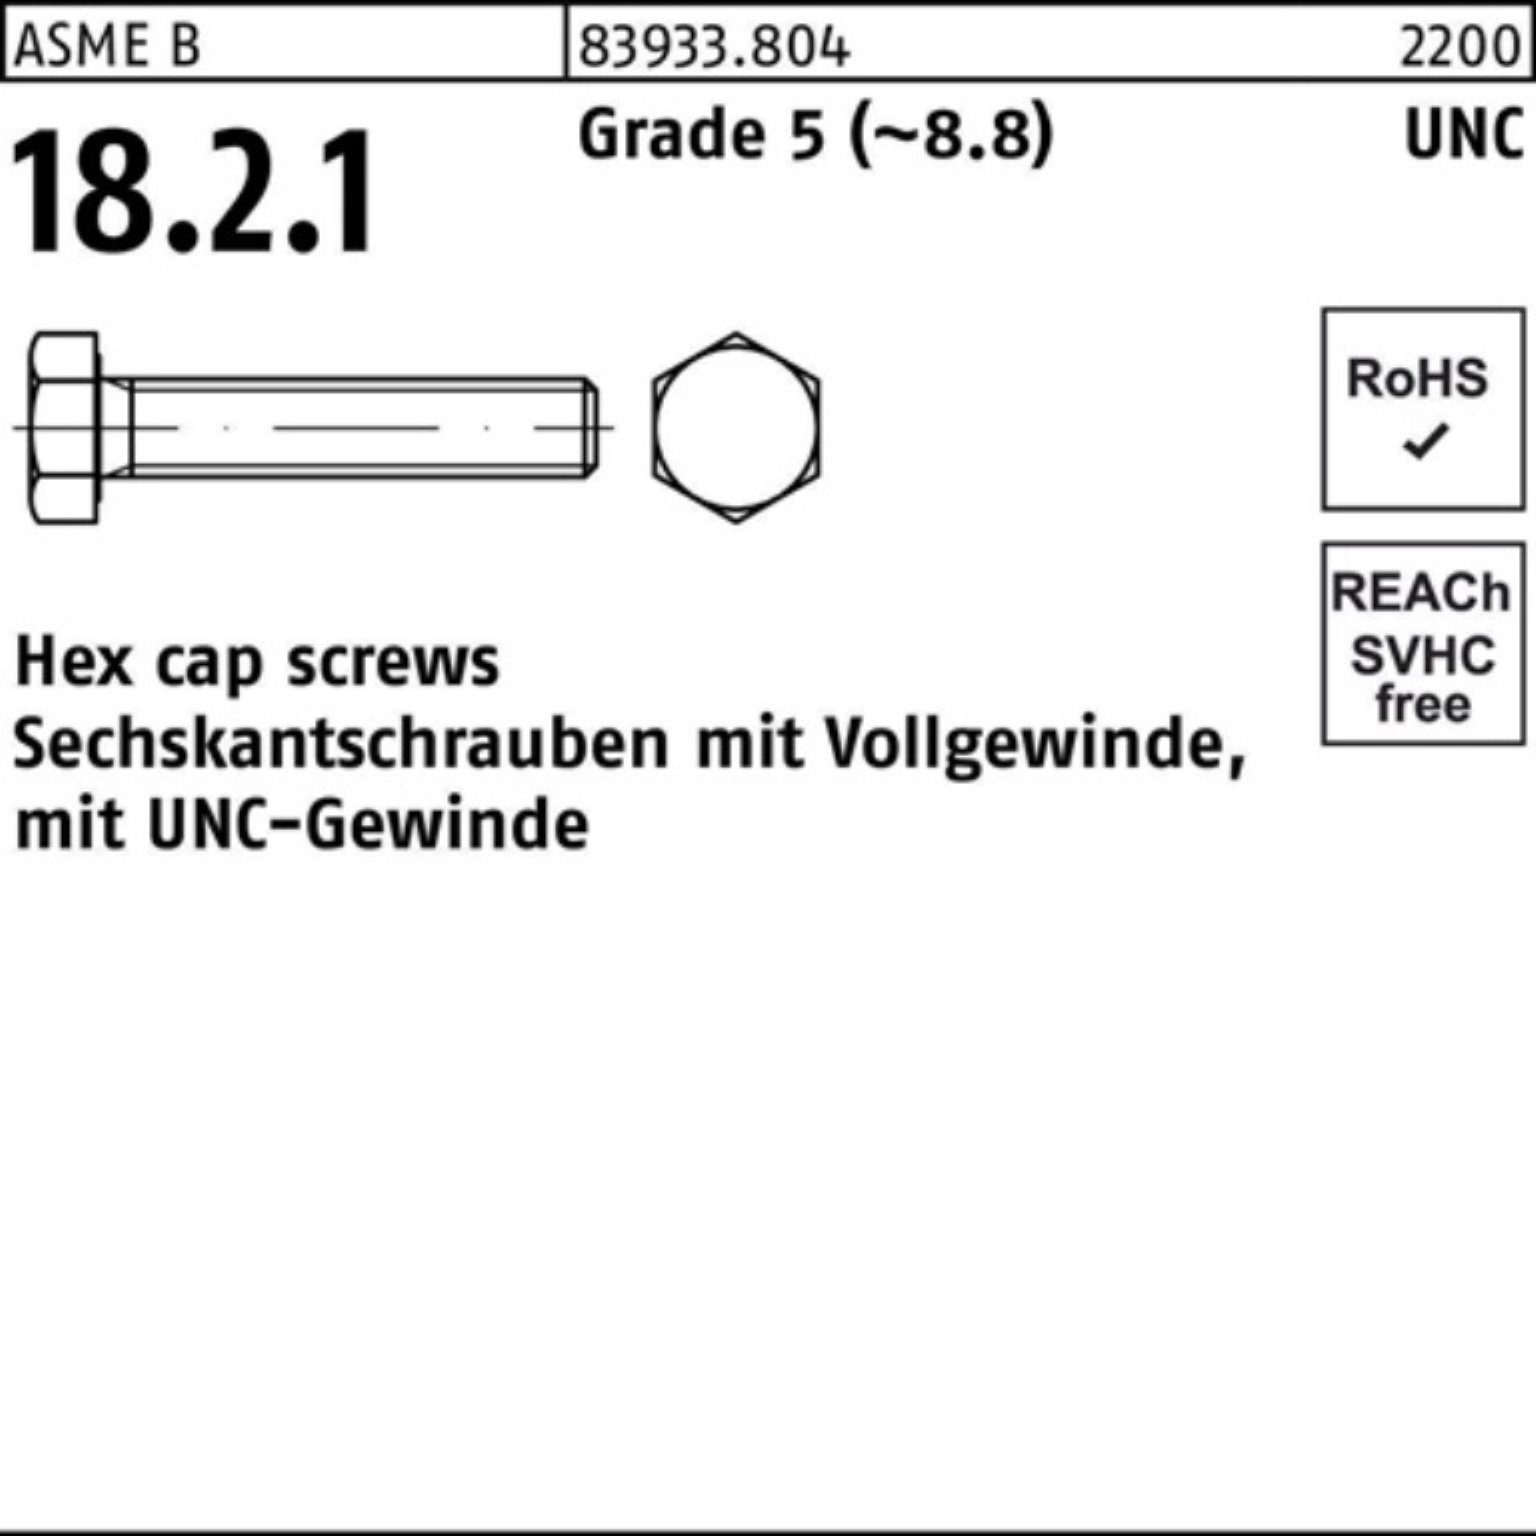 Reyher Sechskantschraube 100er Pack Sechskantschraube R 83933 UNC-Gewinde VG 5/16x 7/8 Grade 5